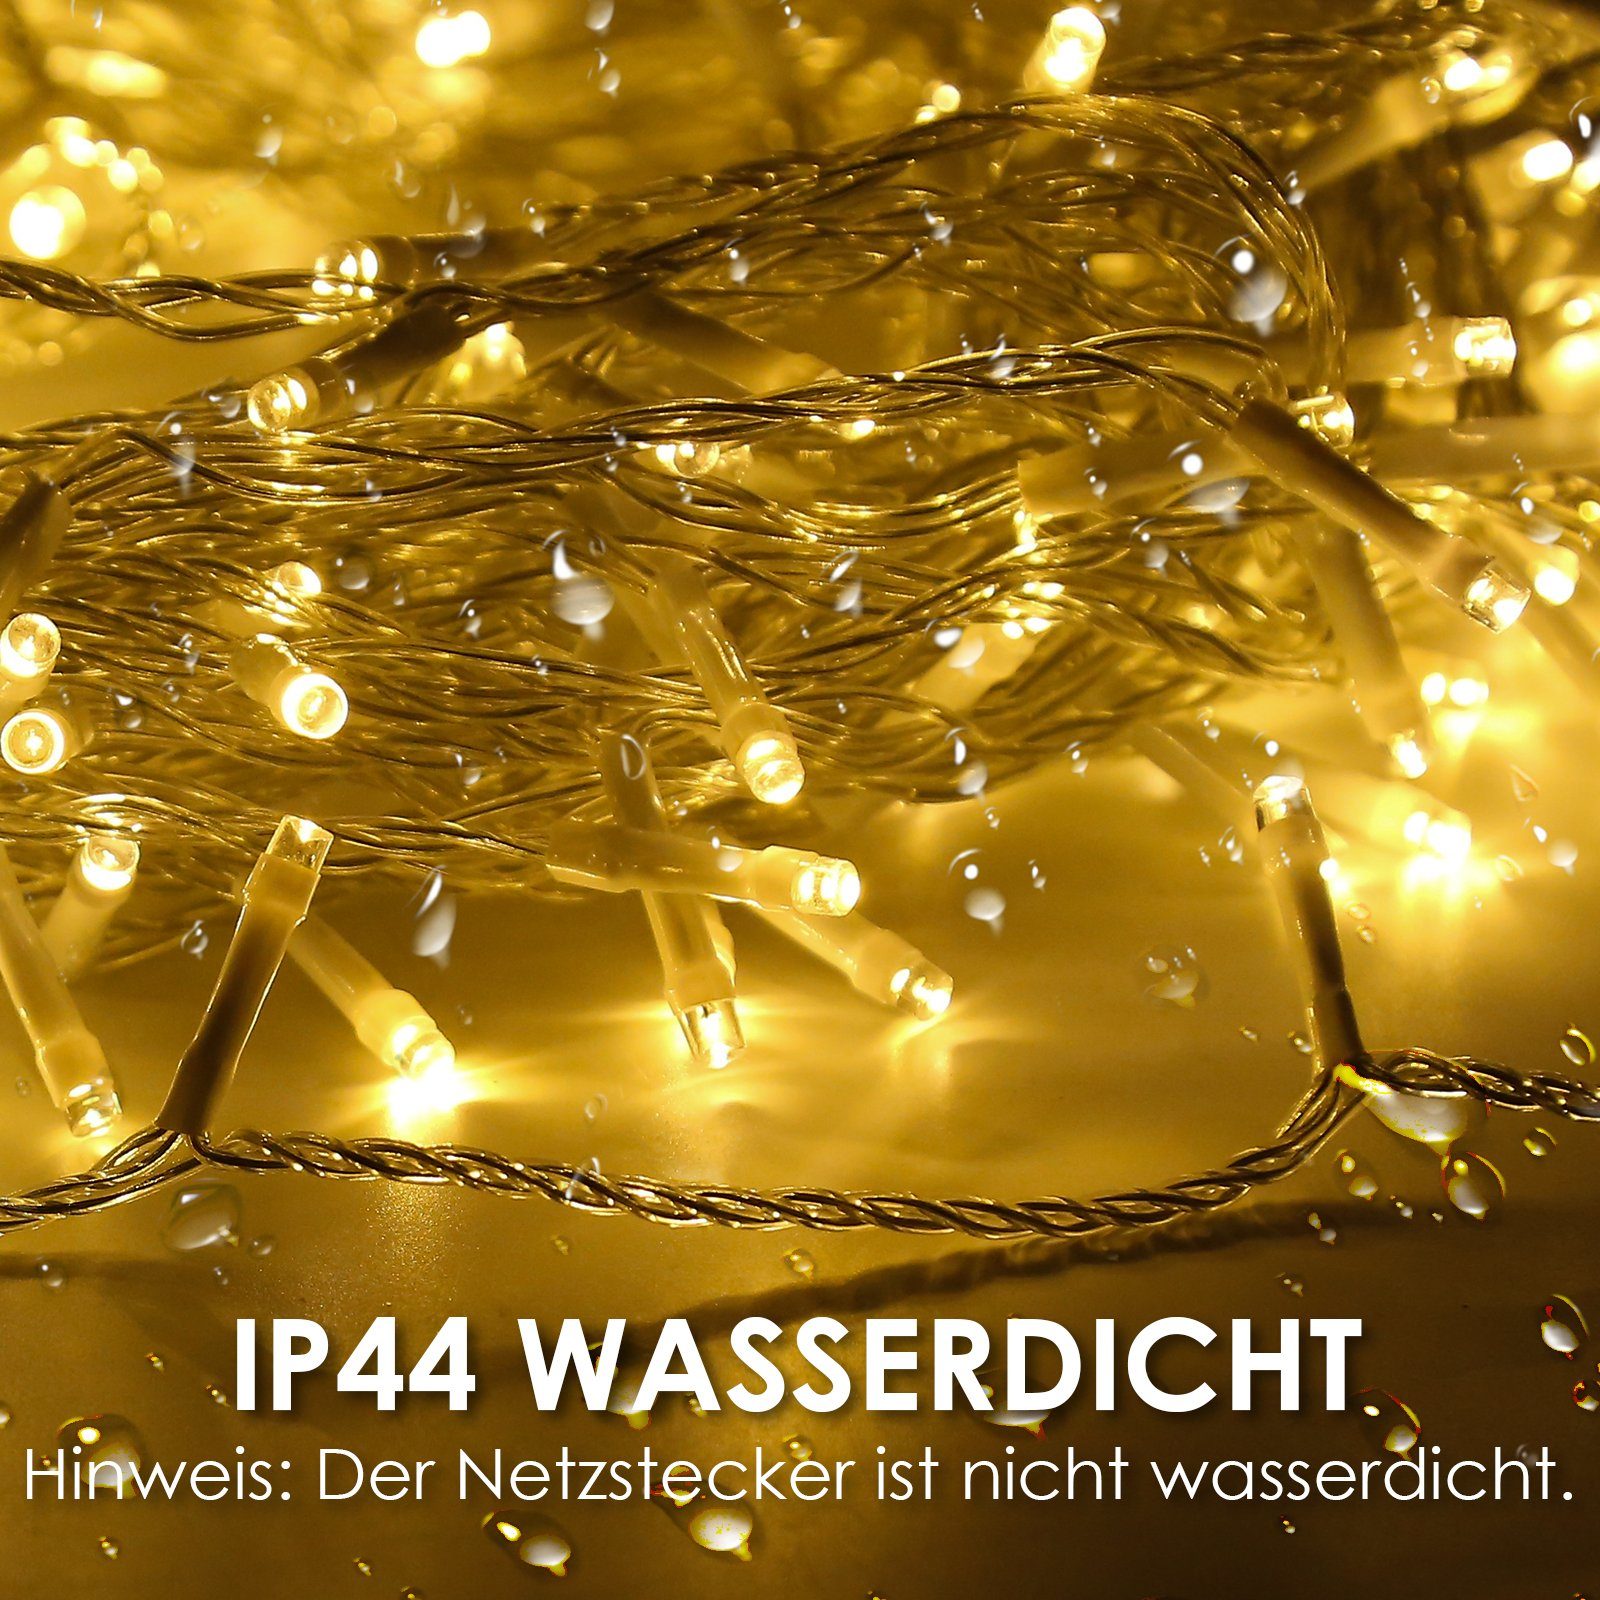 Gimisgu LED-Lichterkette 10-200m LED Lichterkette Weihnachten Beleuchtung Wasserdicht warmweiß Außen Deko IP44, Innen